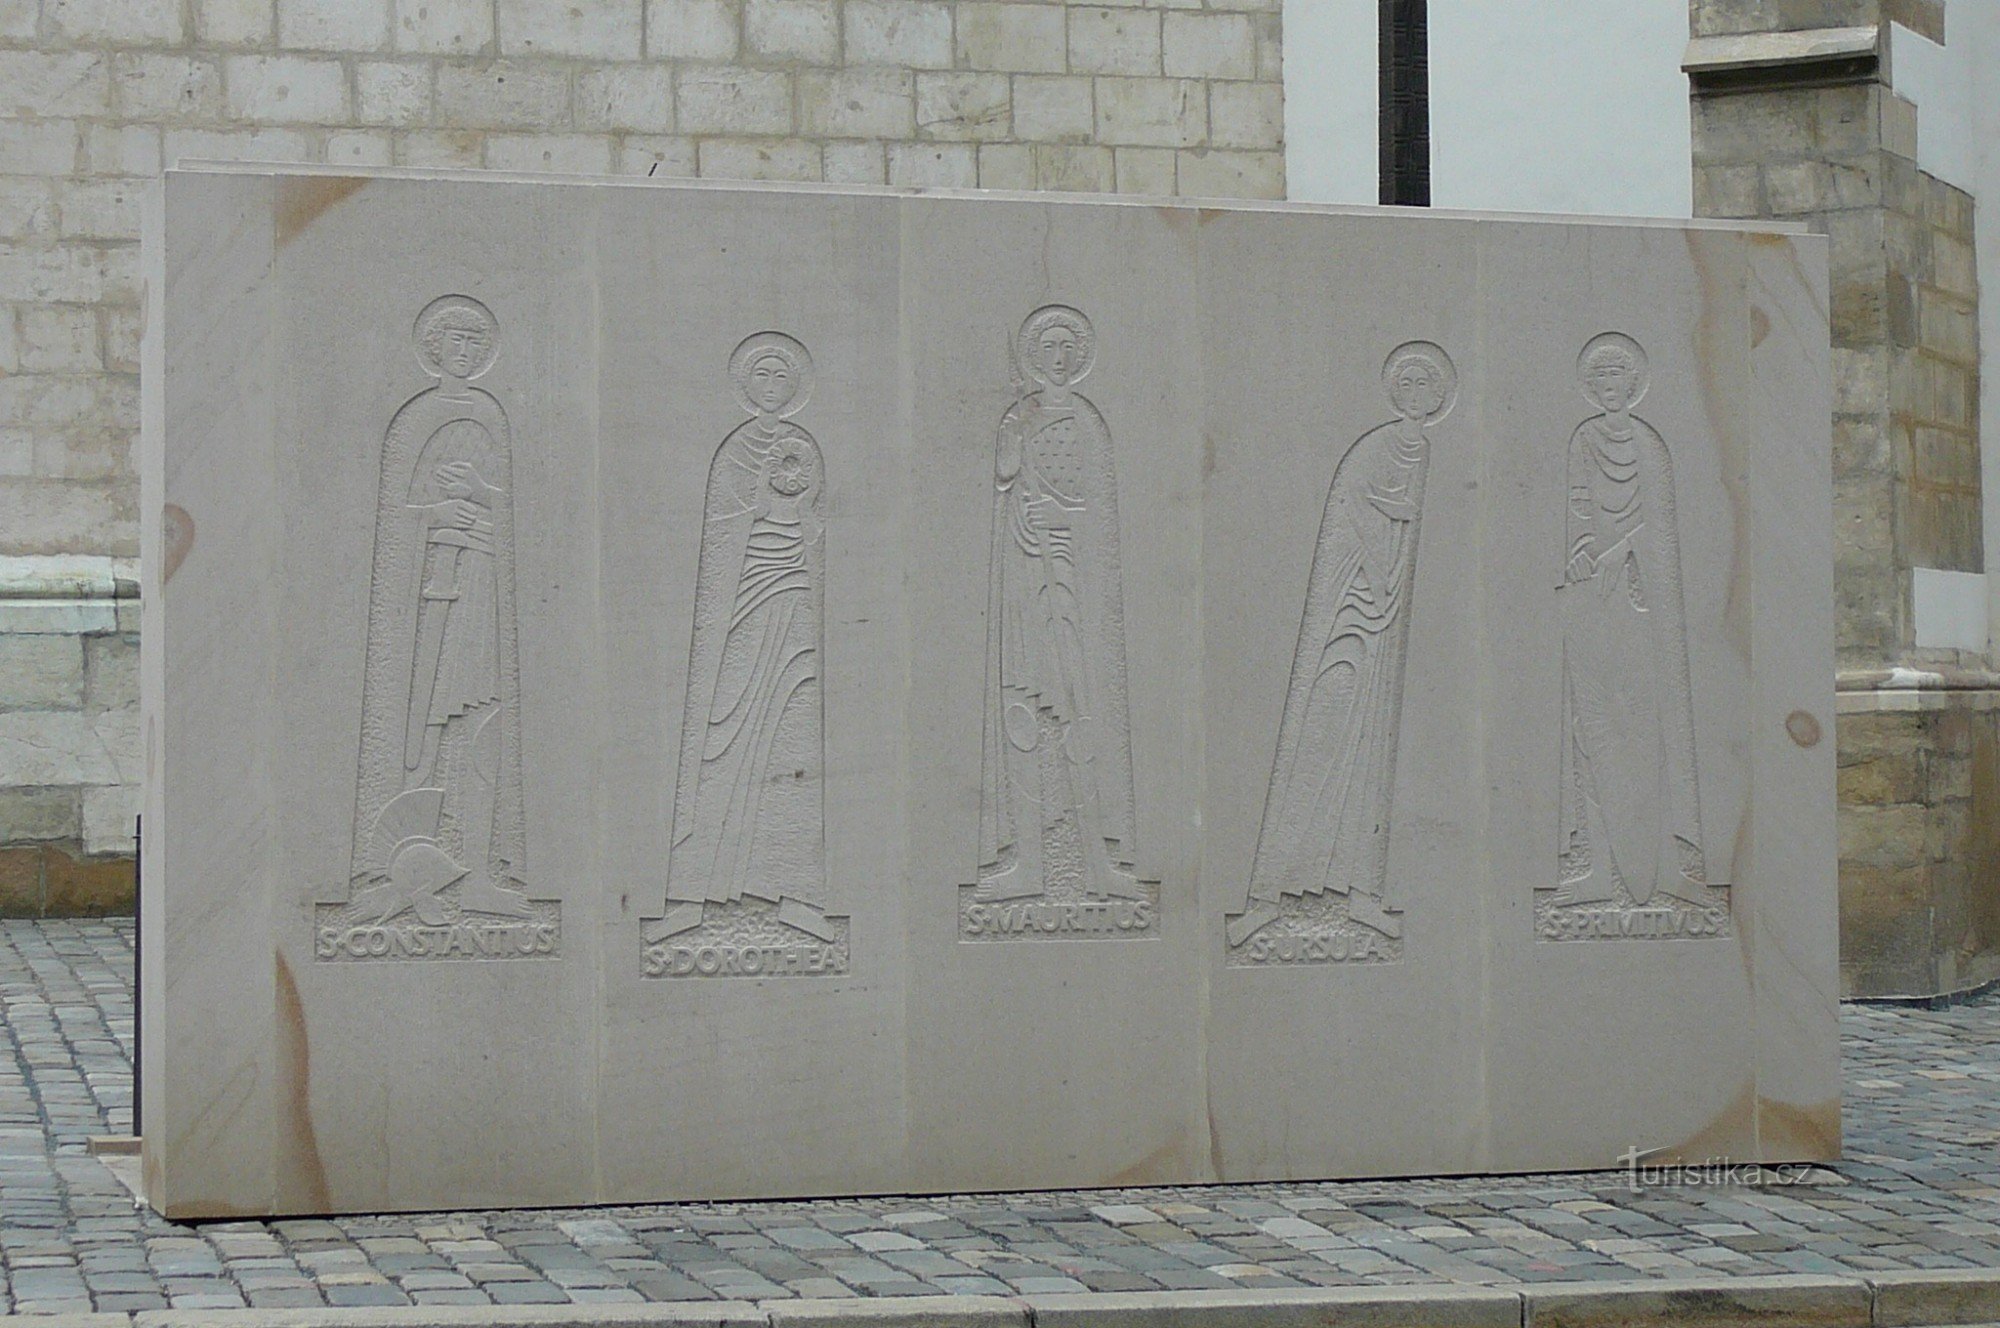 Partea din spate a zidului de la intrare cu reprezentarea celor cinci sfinți care au legătură cu osul